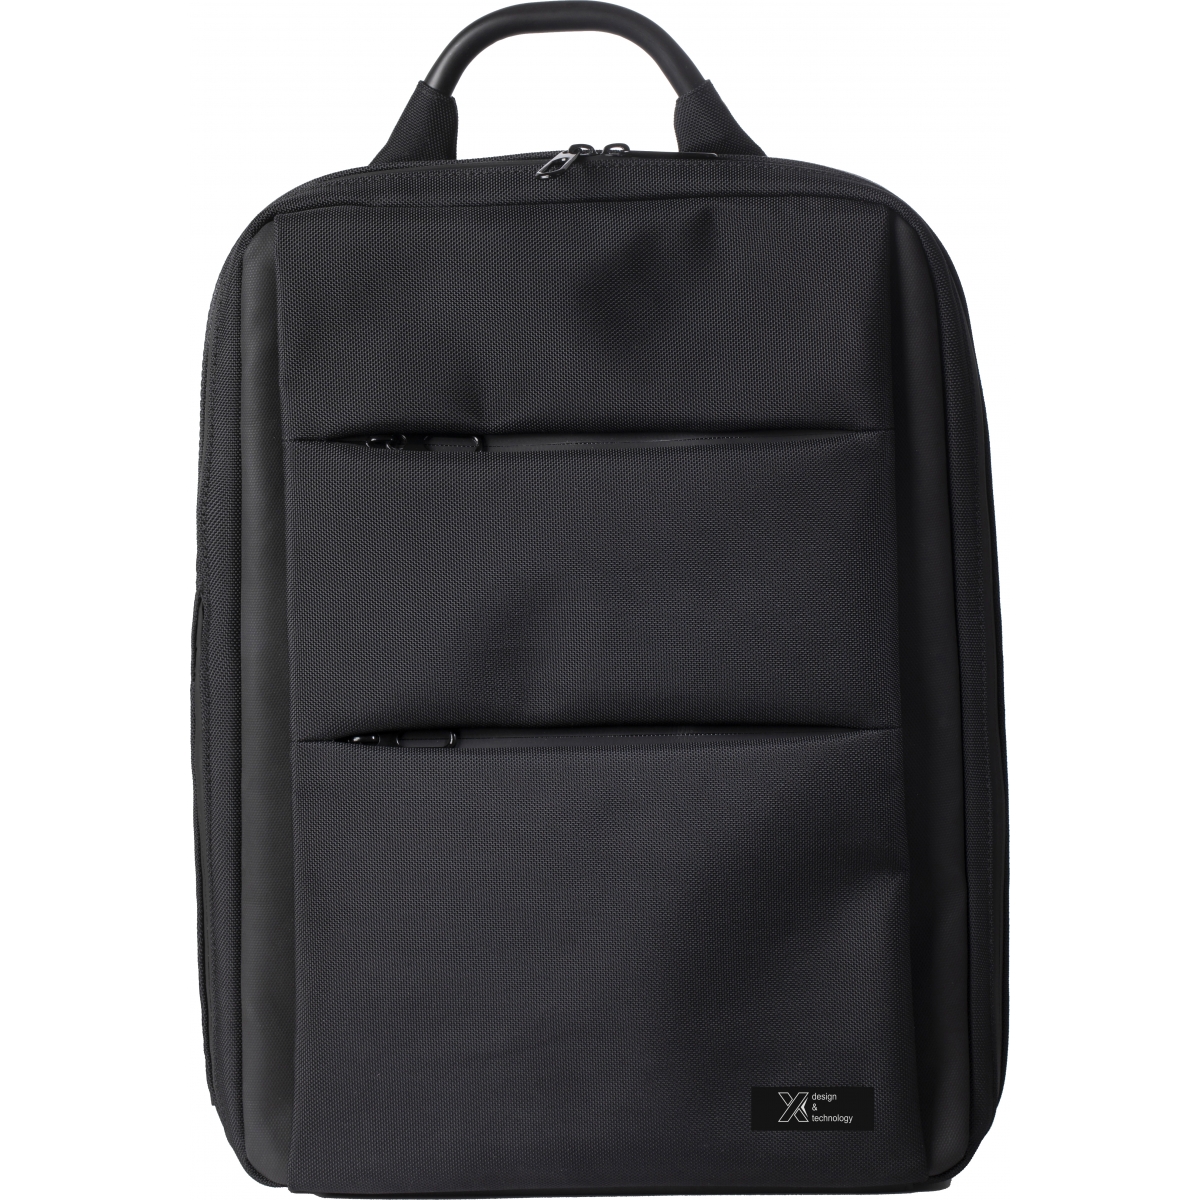 L10 - Eco business backpack 10.000 mAh